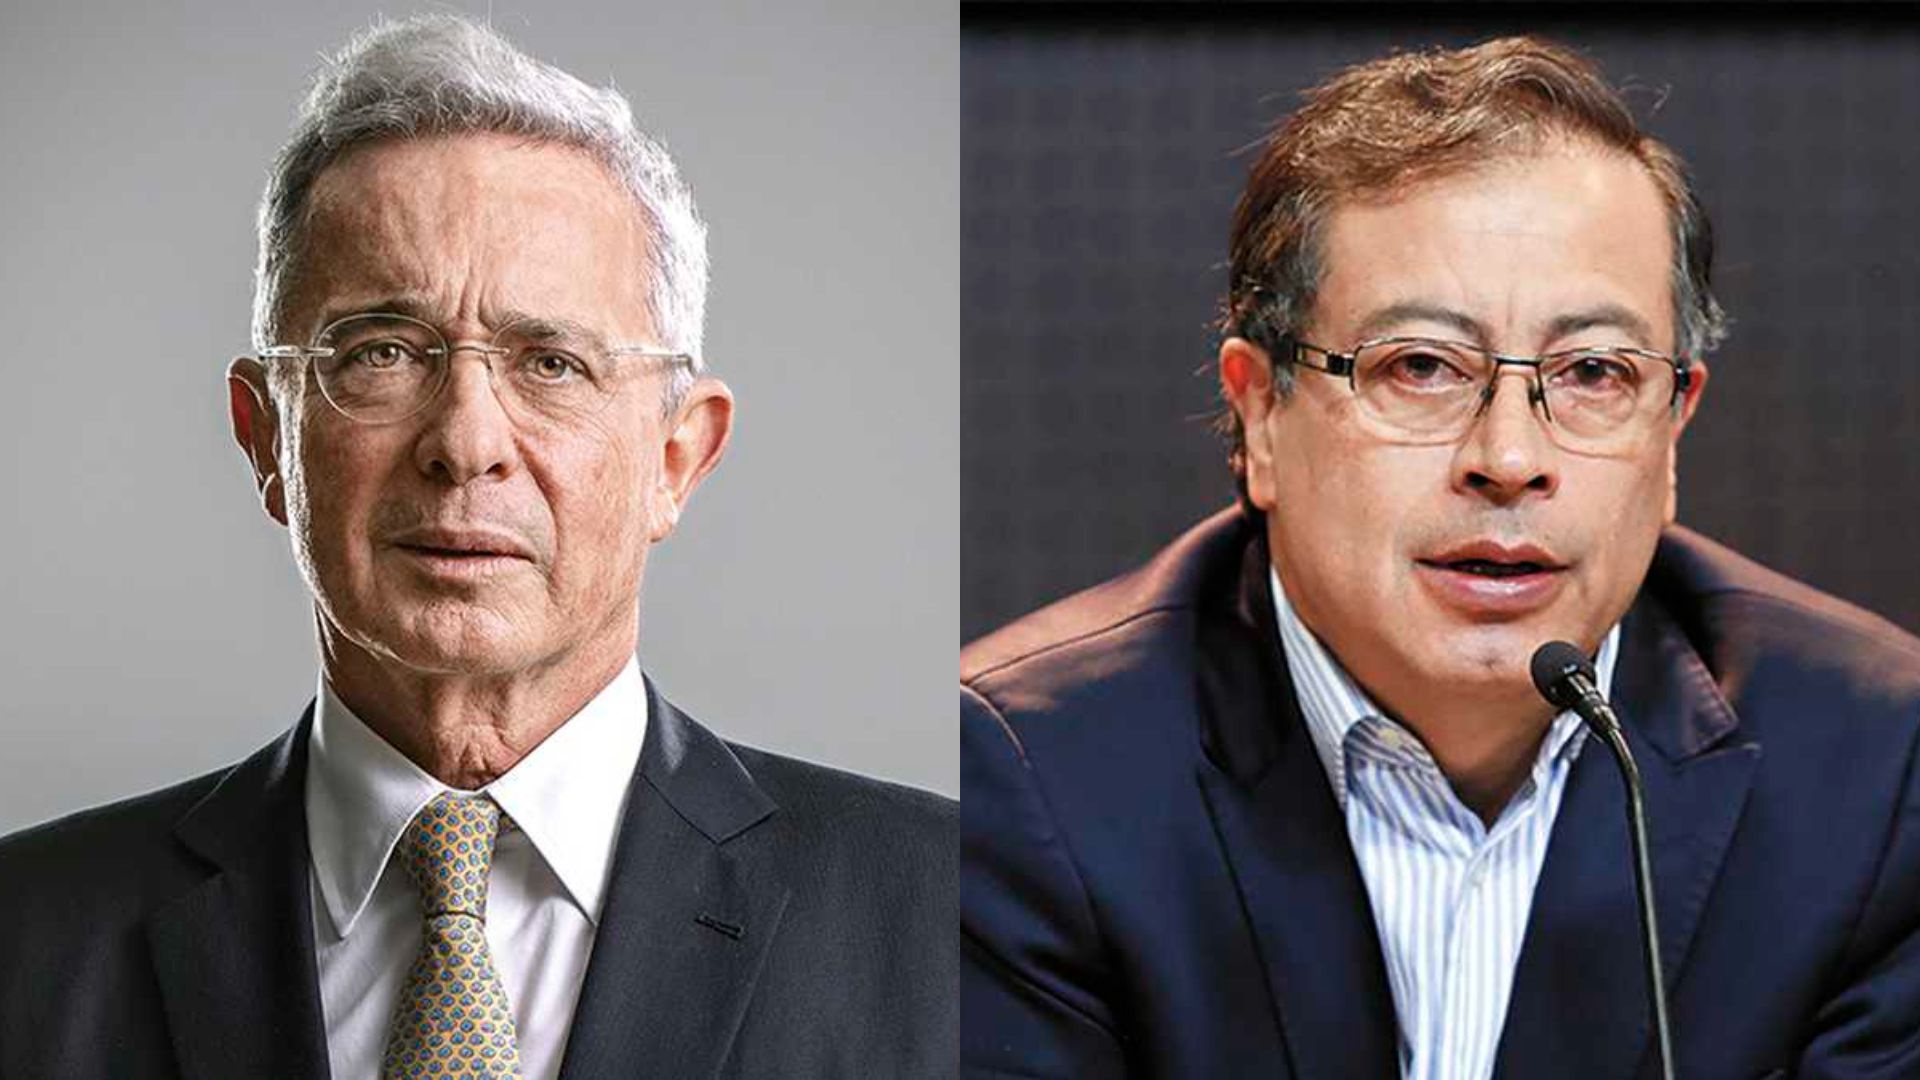  Uribe y Petro dicen que no pasarán factura, olvidan el pasado y trabajarán por el progreso de Colombia